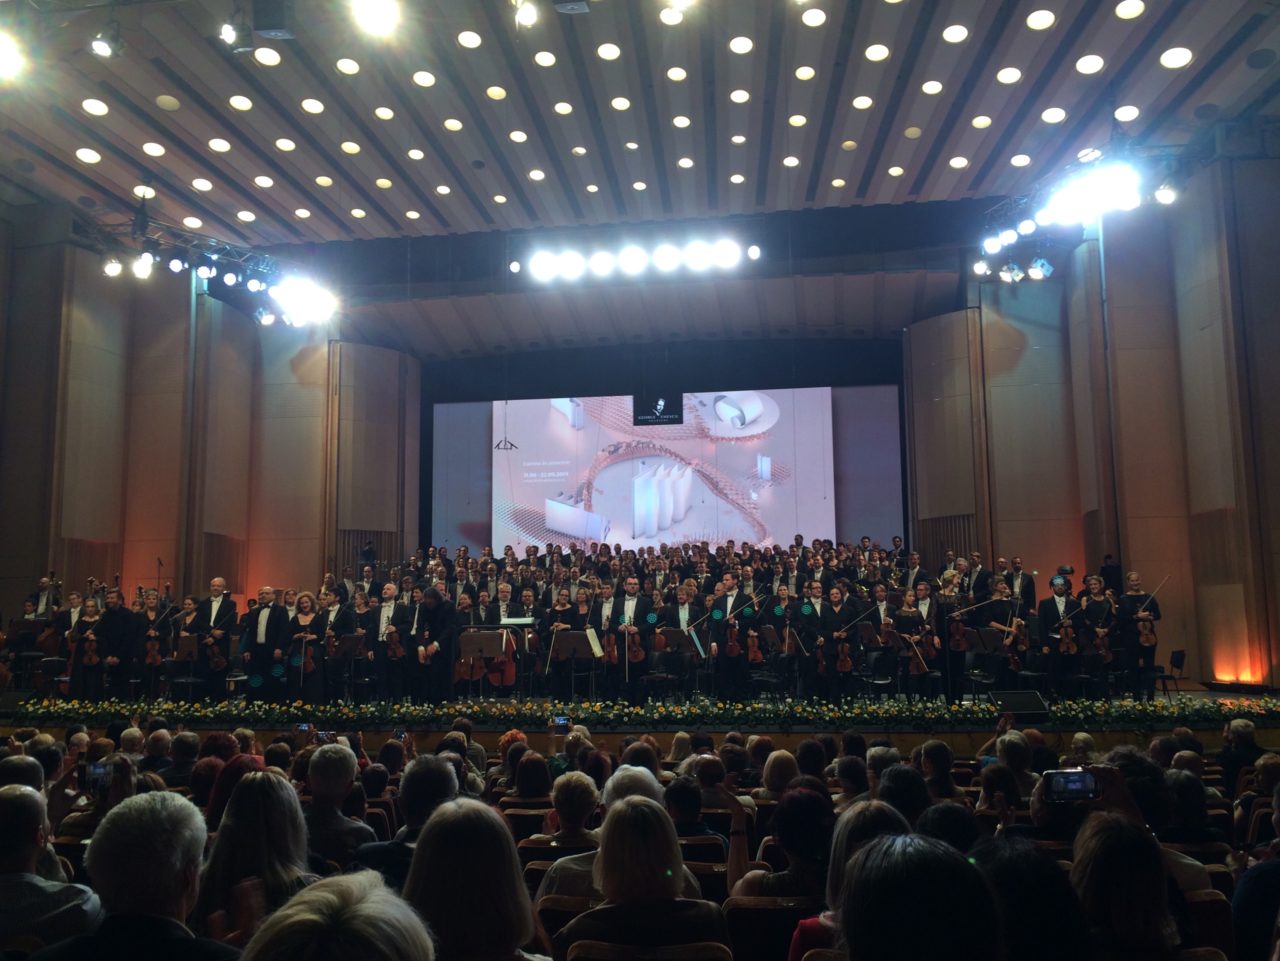 Sala Palatului, Bucharest, Enescu Festival, crowd, audience, culture, hall, auditorium, performance, music